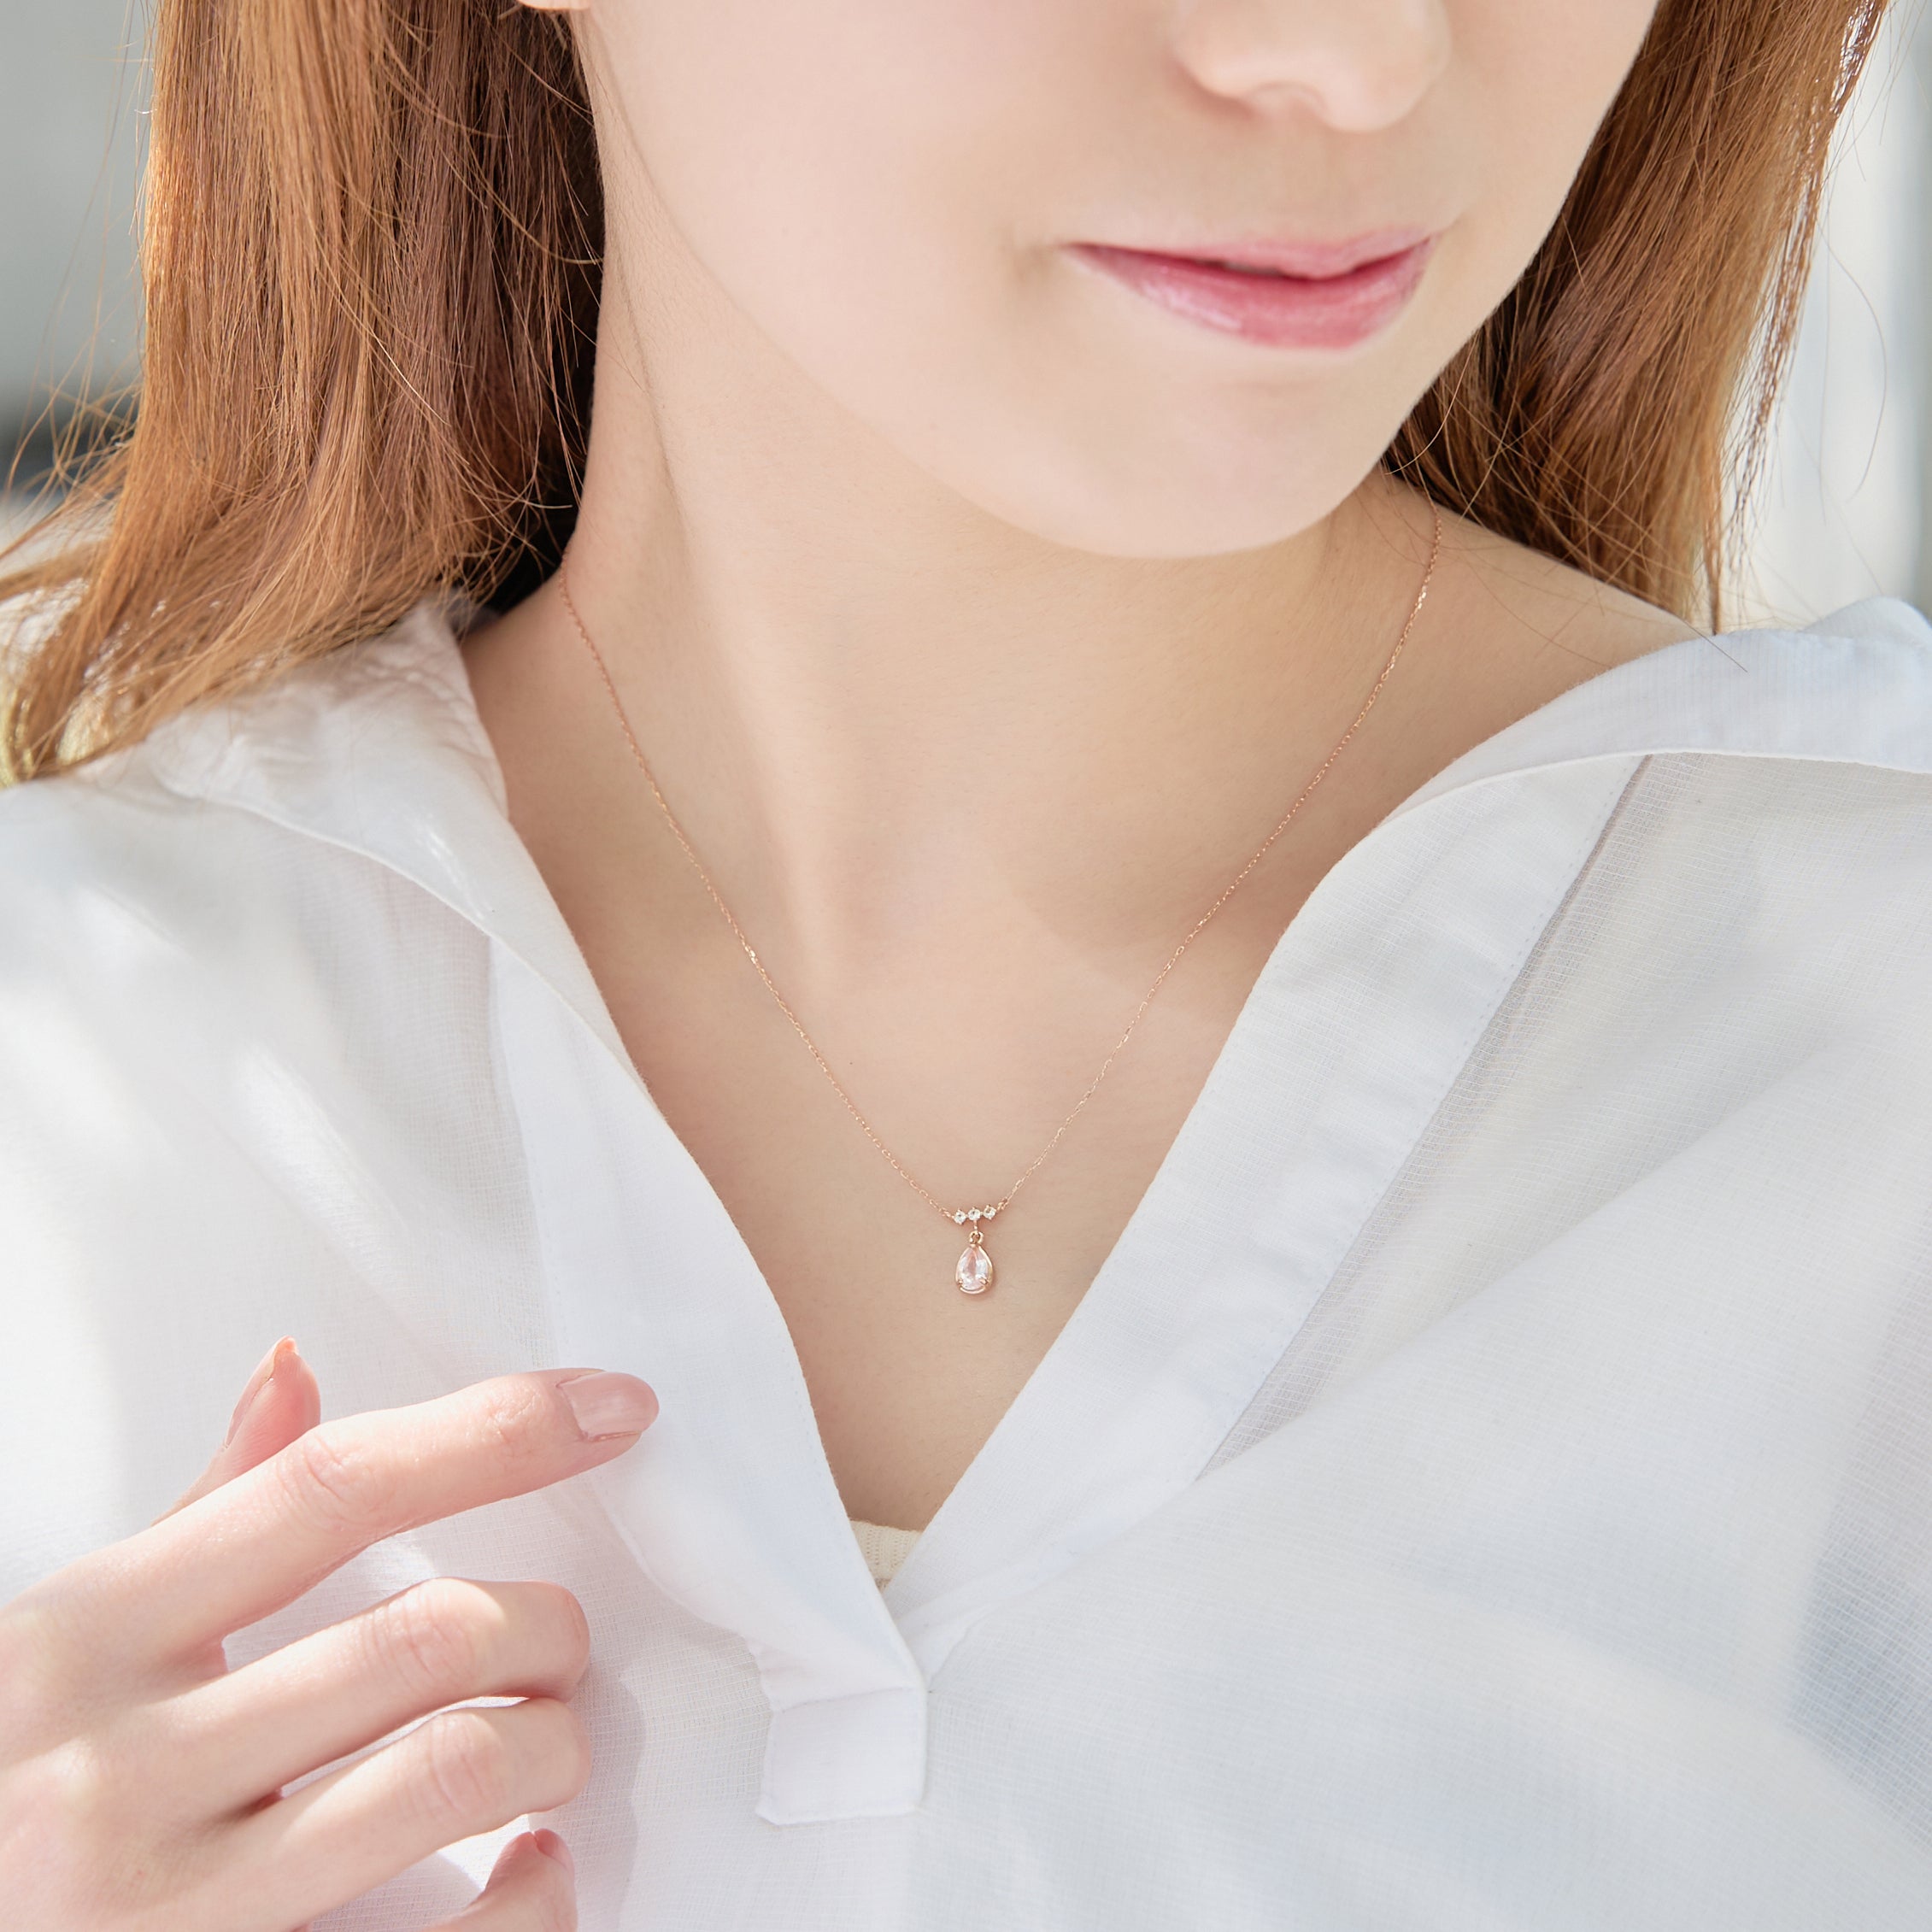 10 Karat Pink Gold Rose Quartz Necklace｜60-9412